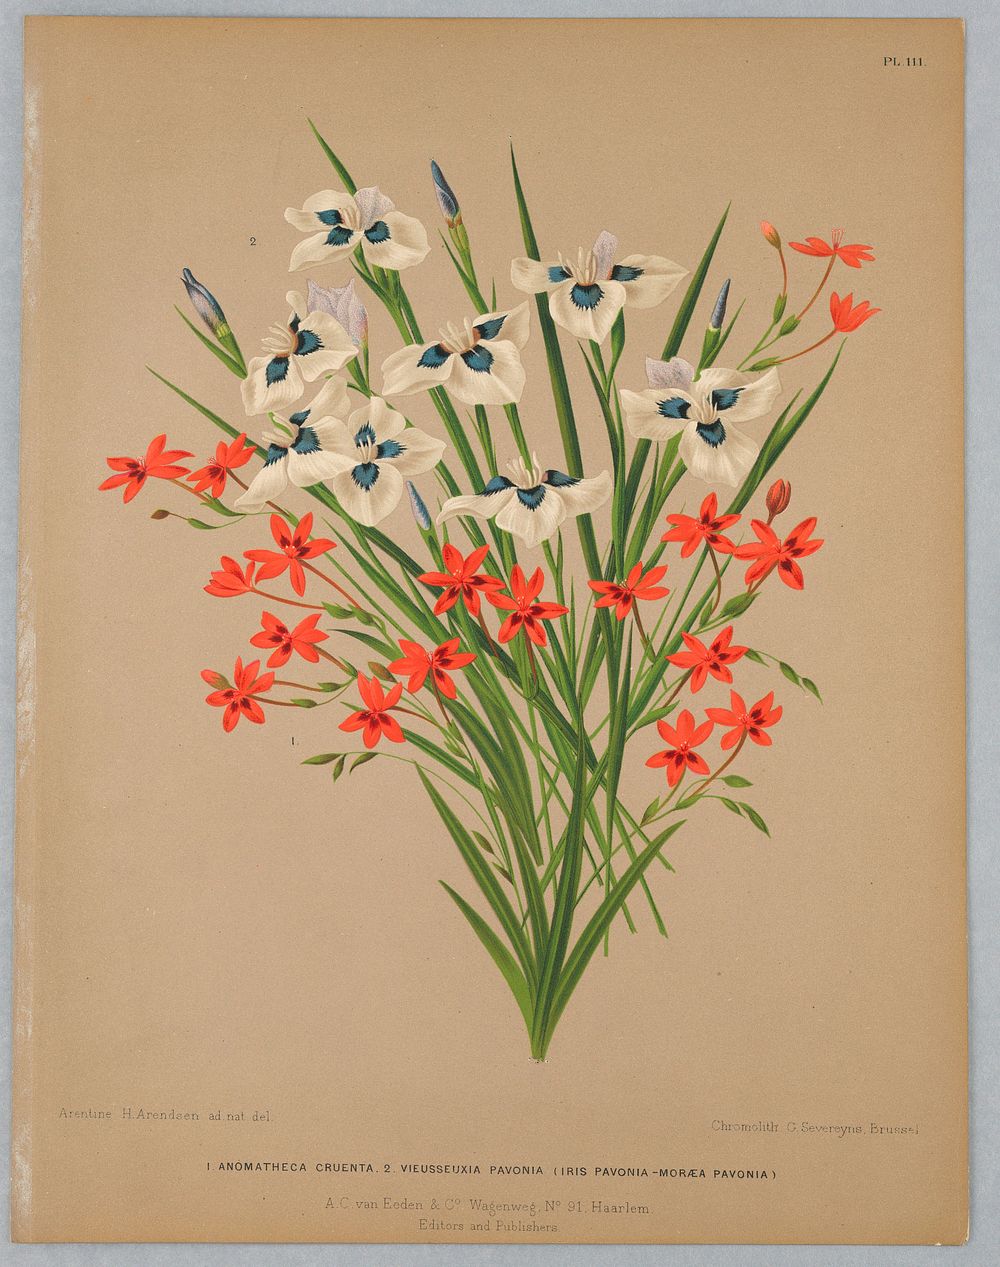 Anomatheca Cruenta, Vieusseuxie Pavonia (Iris Pavonia–Moreaea Pavonia), Plate 111 from A. C. Van Eeden's "Flora of Haarlem"